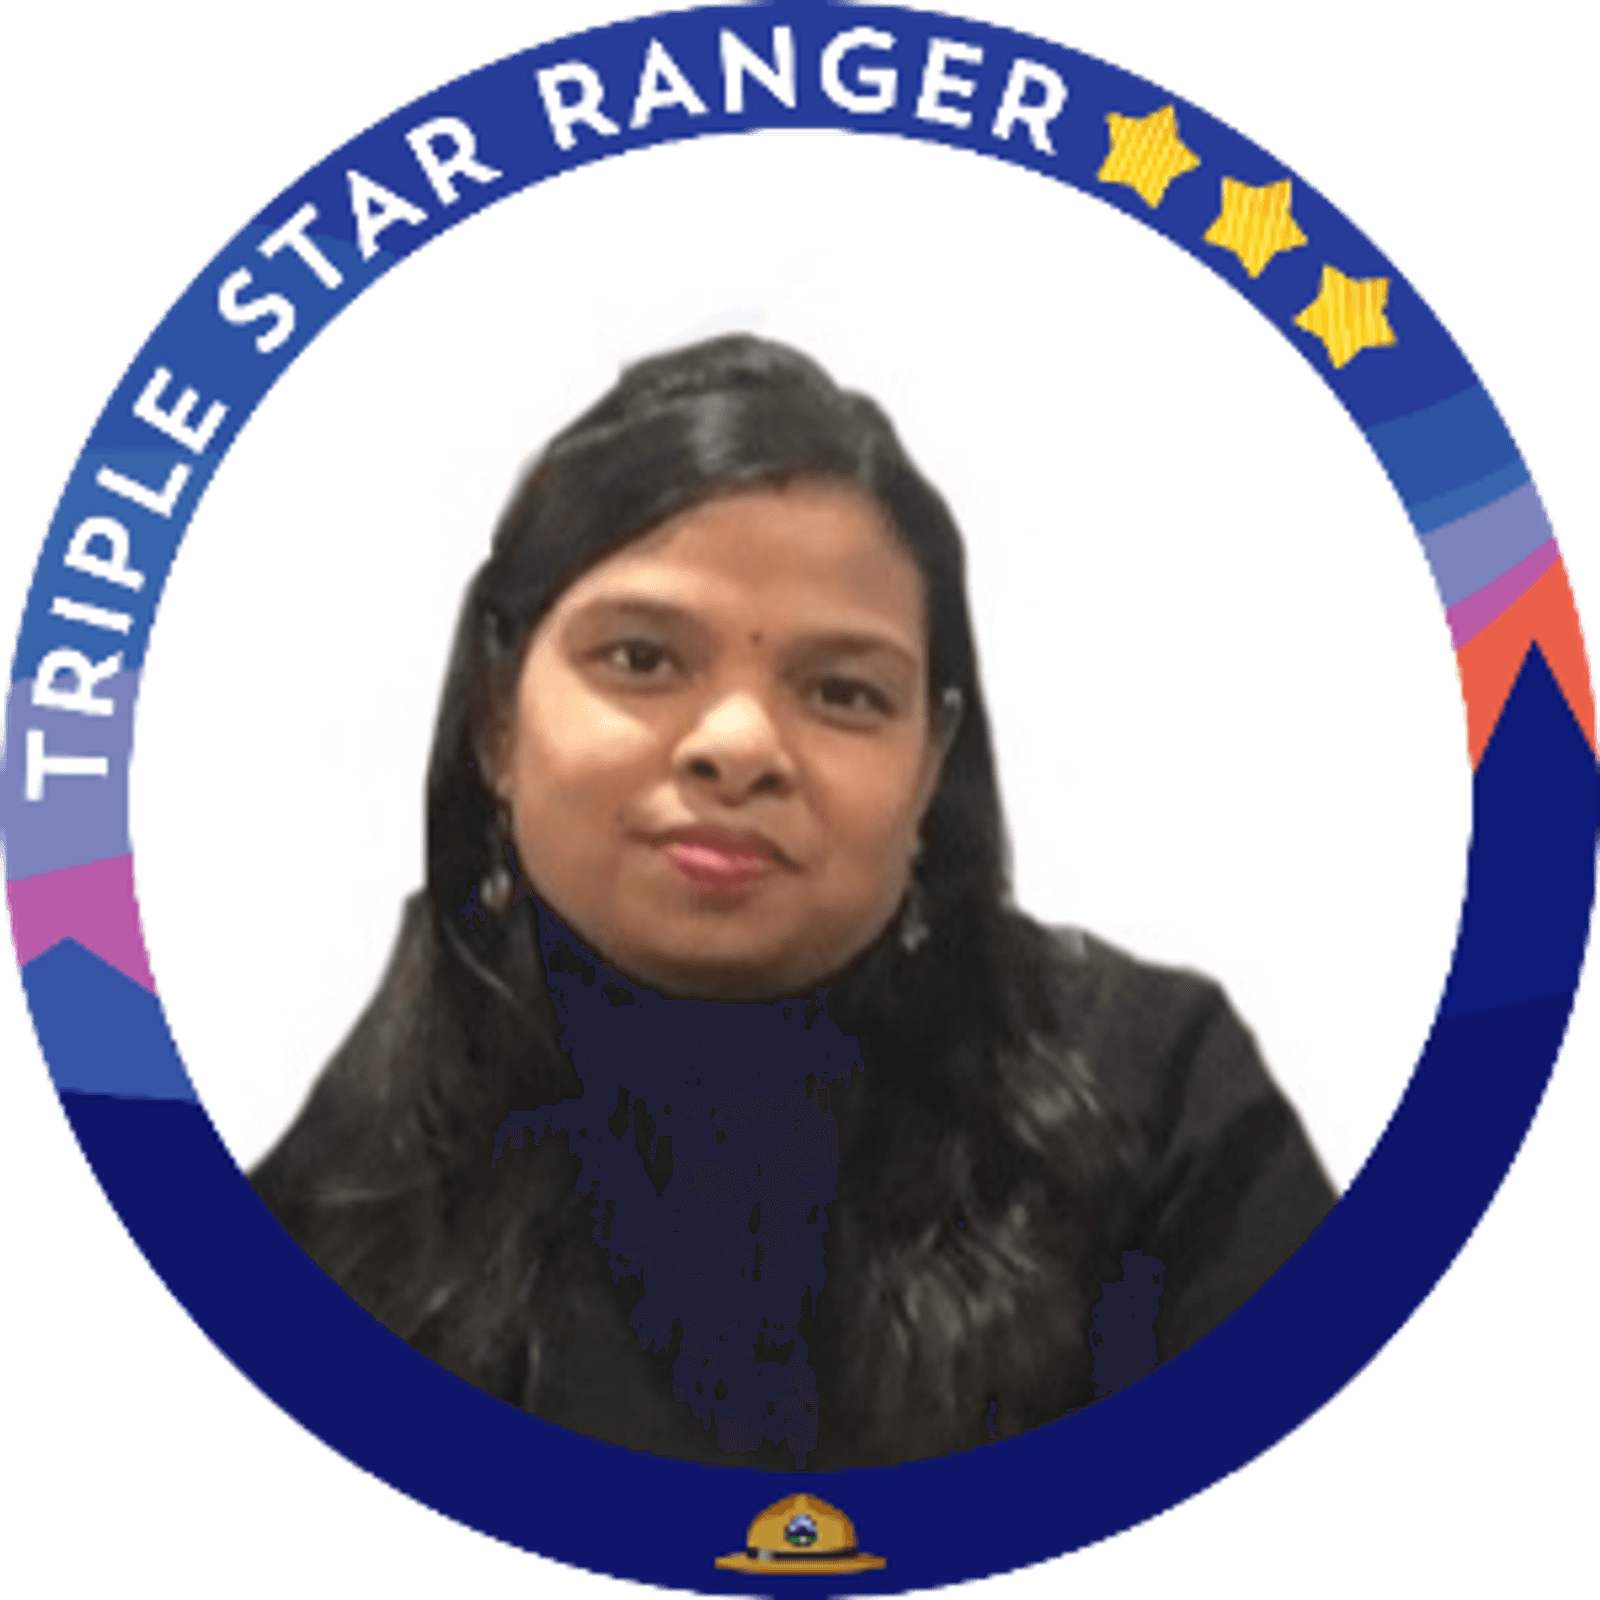 Subhra triple Ranger